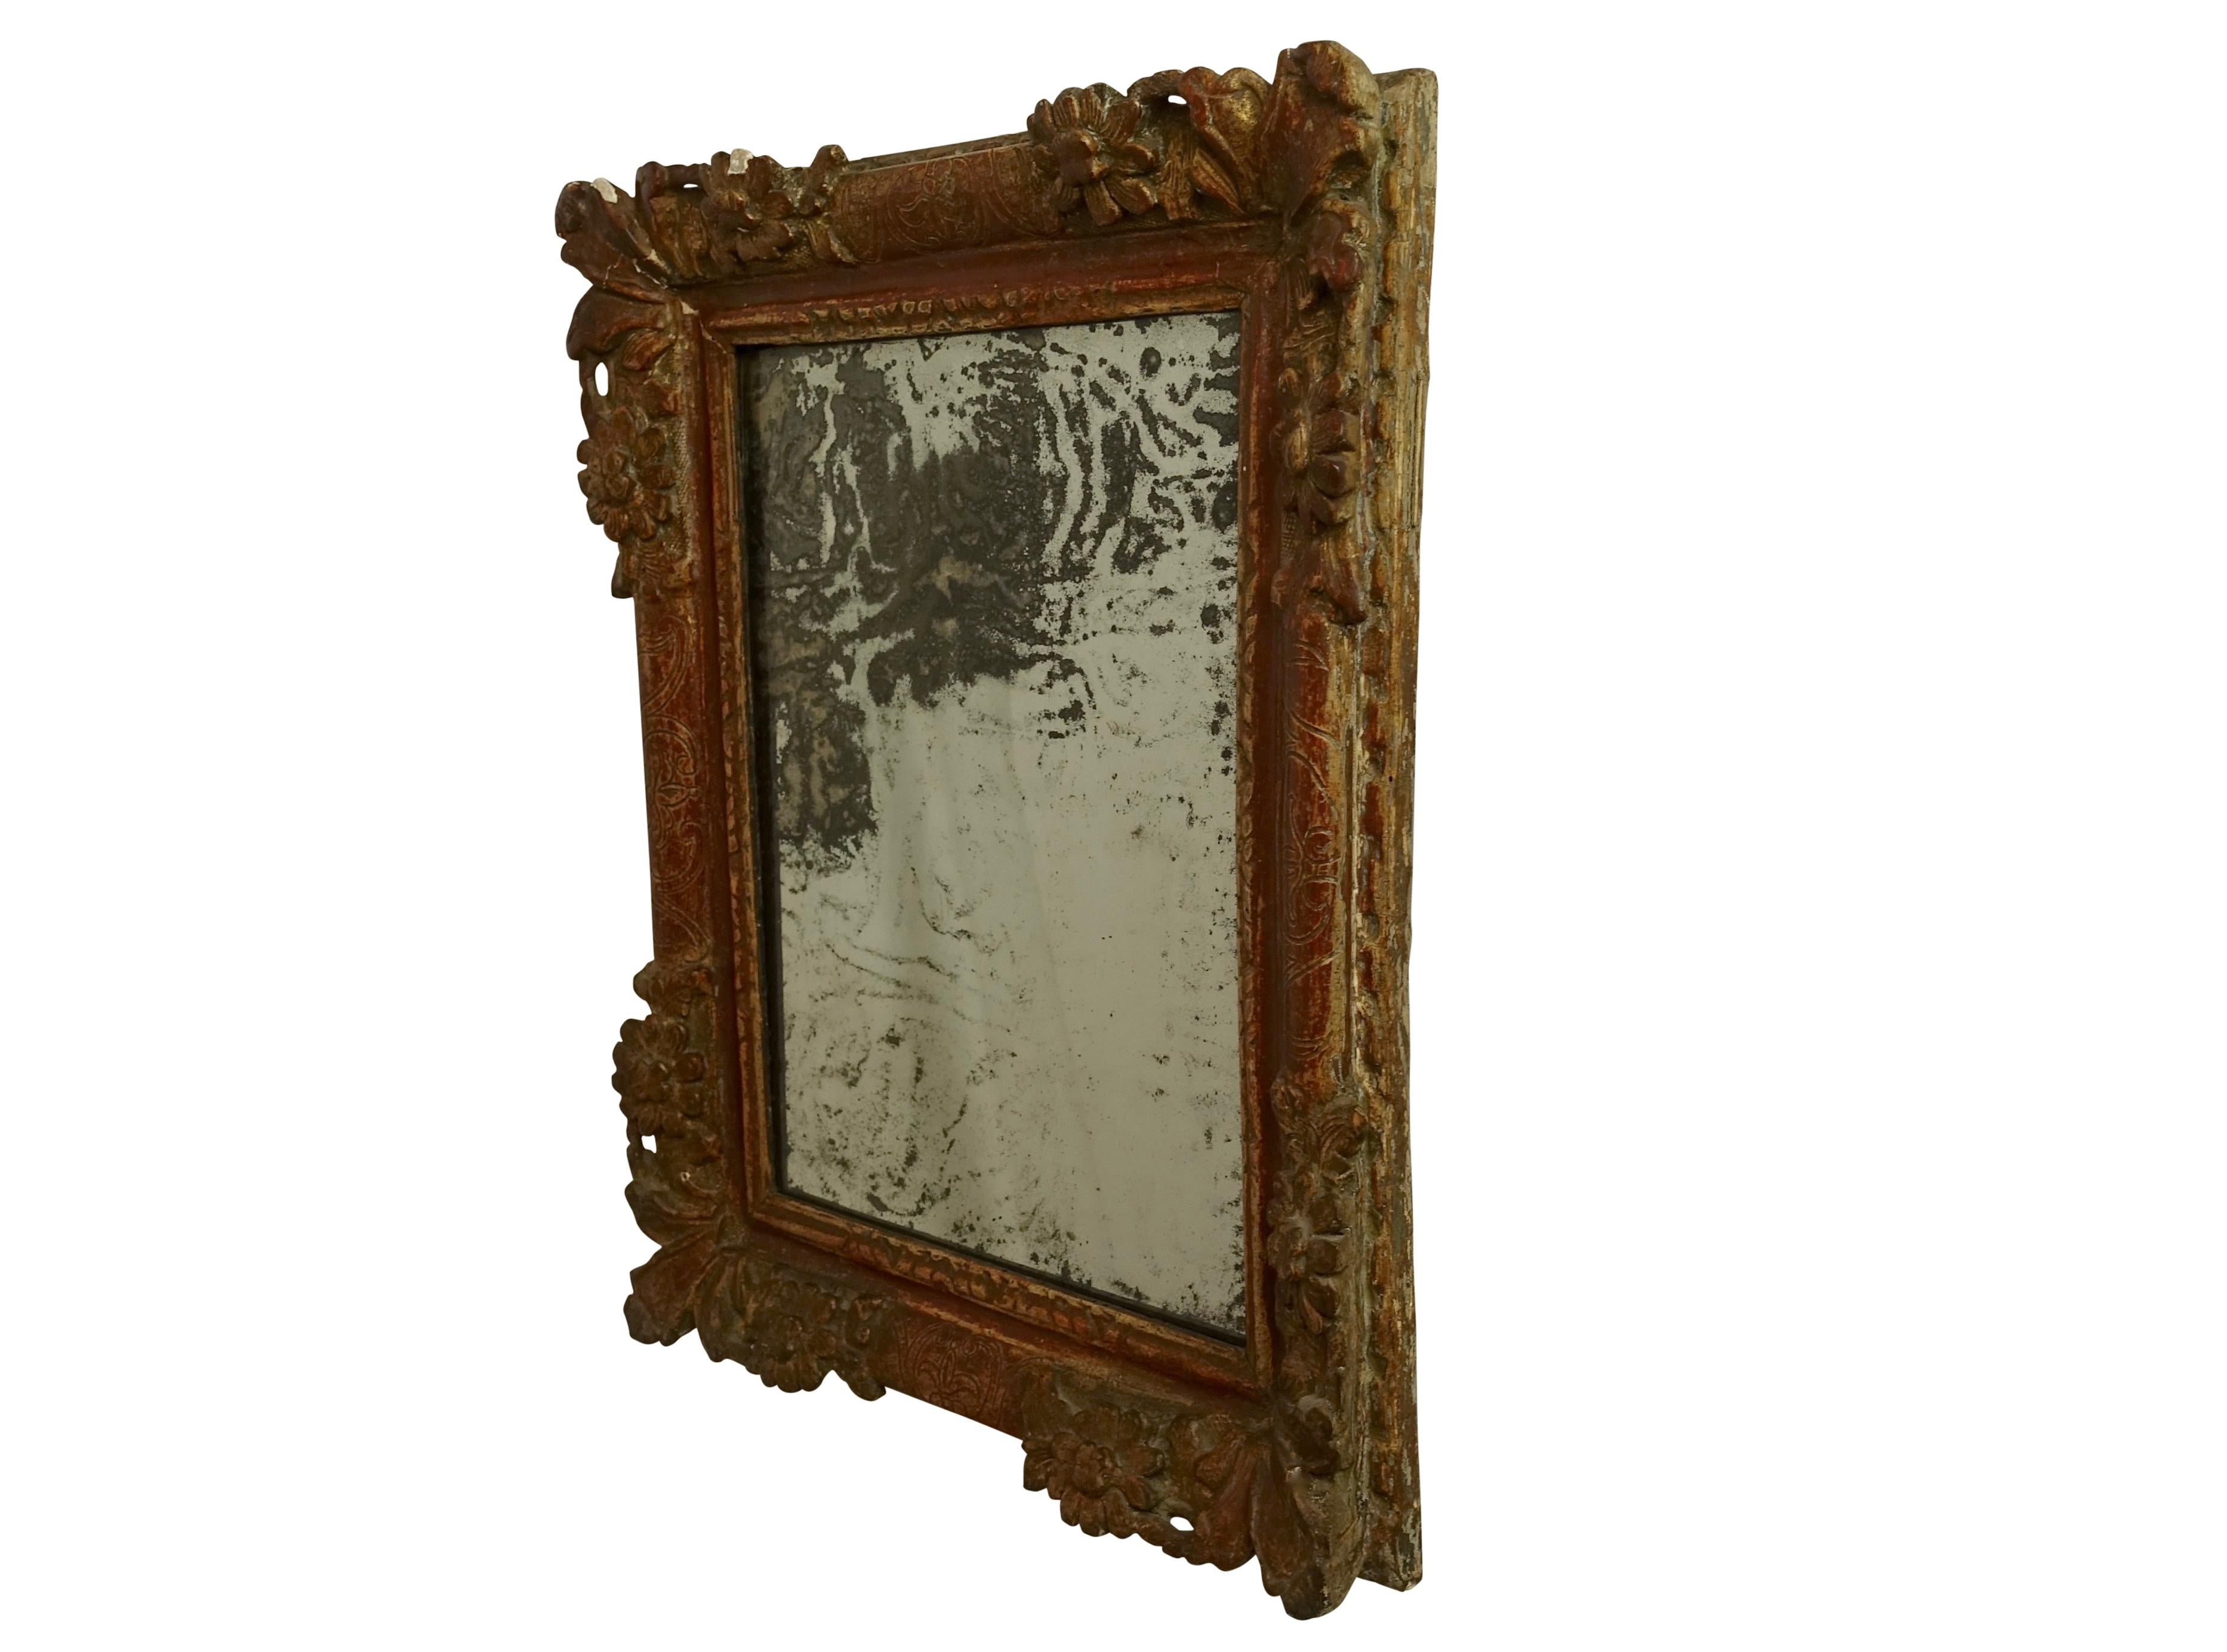 italienischer Bilderrahmen aus dem 18. Jahrhundert mit altem Glasspiegel. Der Rahmen hat Reste von alter Farbe und Vergoldung, der Spiegel ist schön gealtert und beschädigt. 